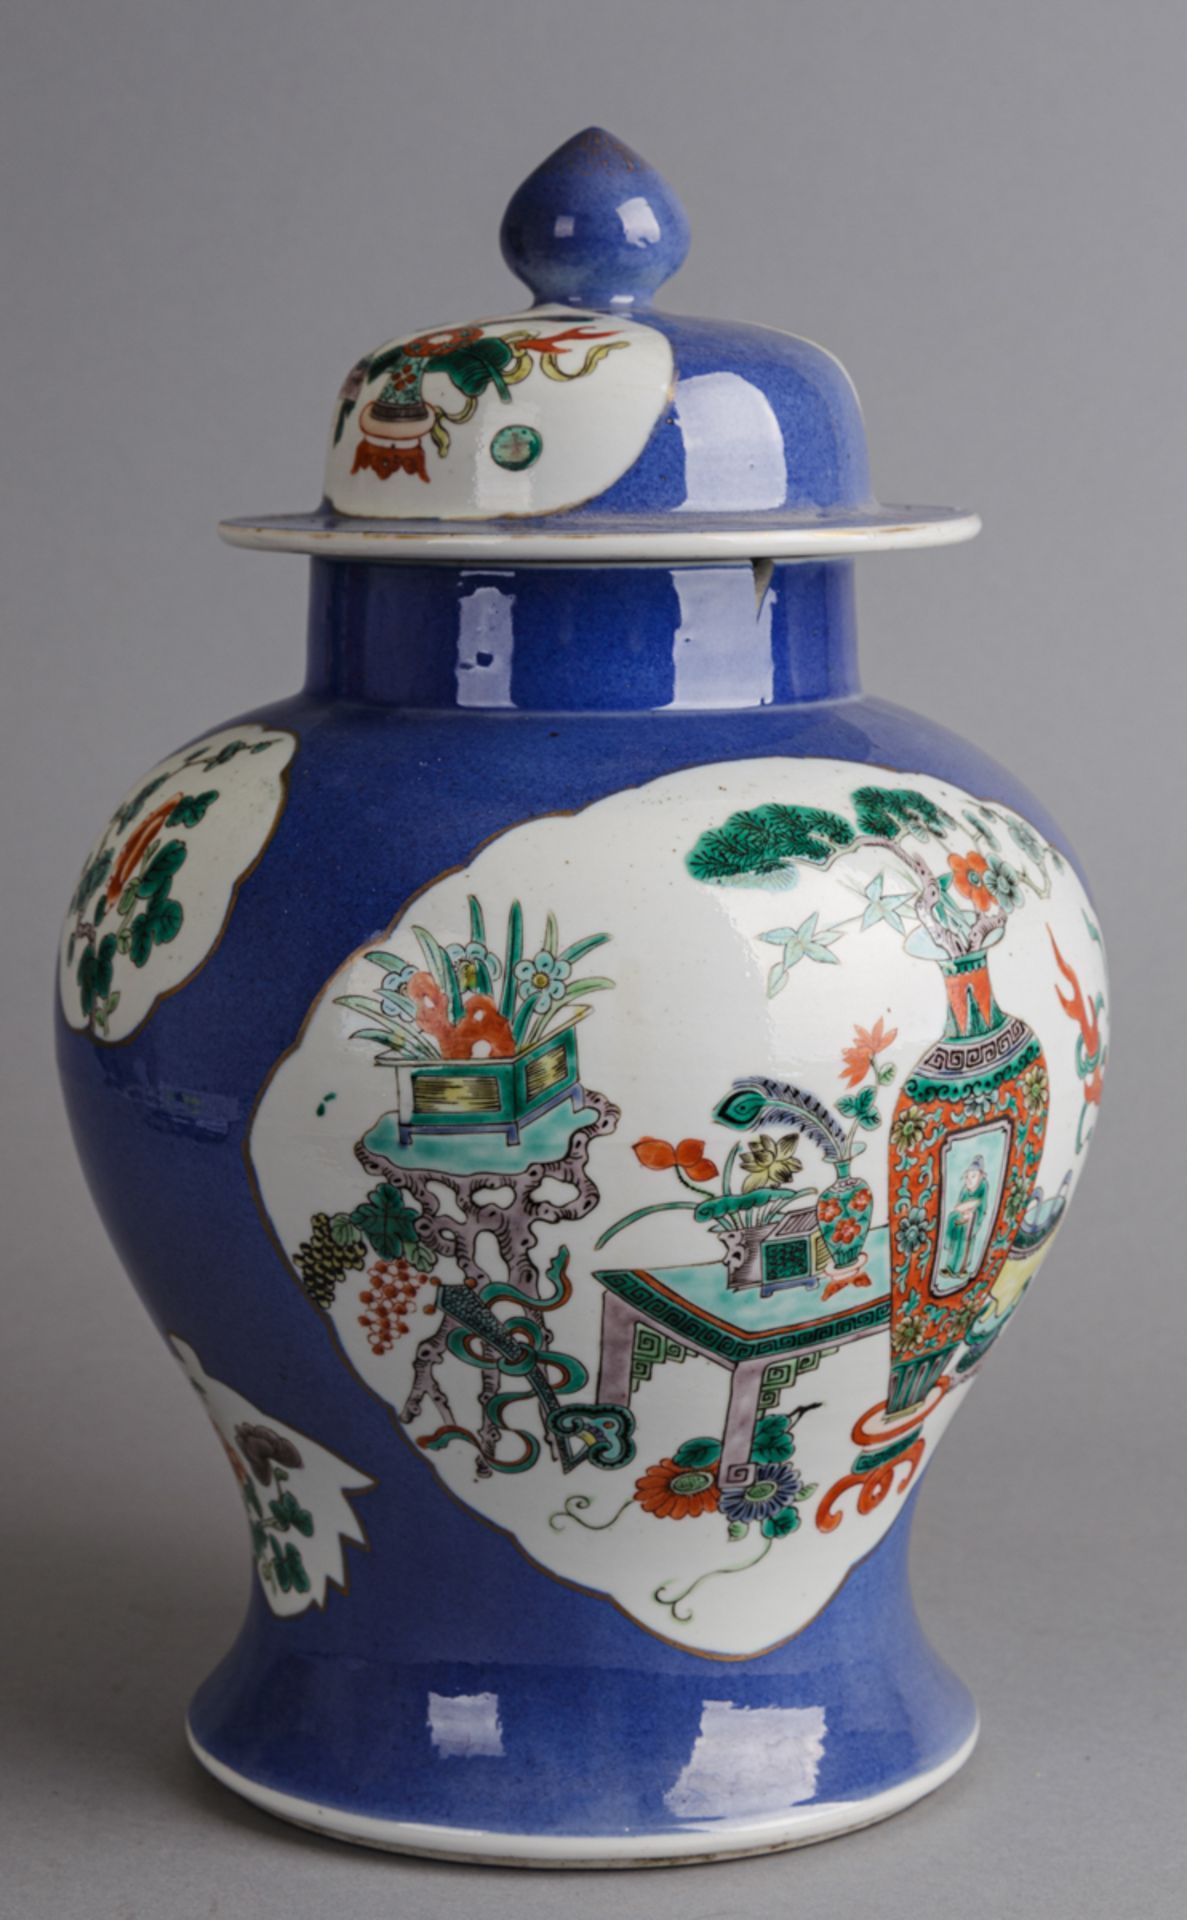 Deckelvase, China, wohl späte Qing Dynastie - Bild 5 aus 5